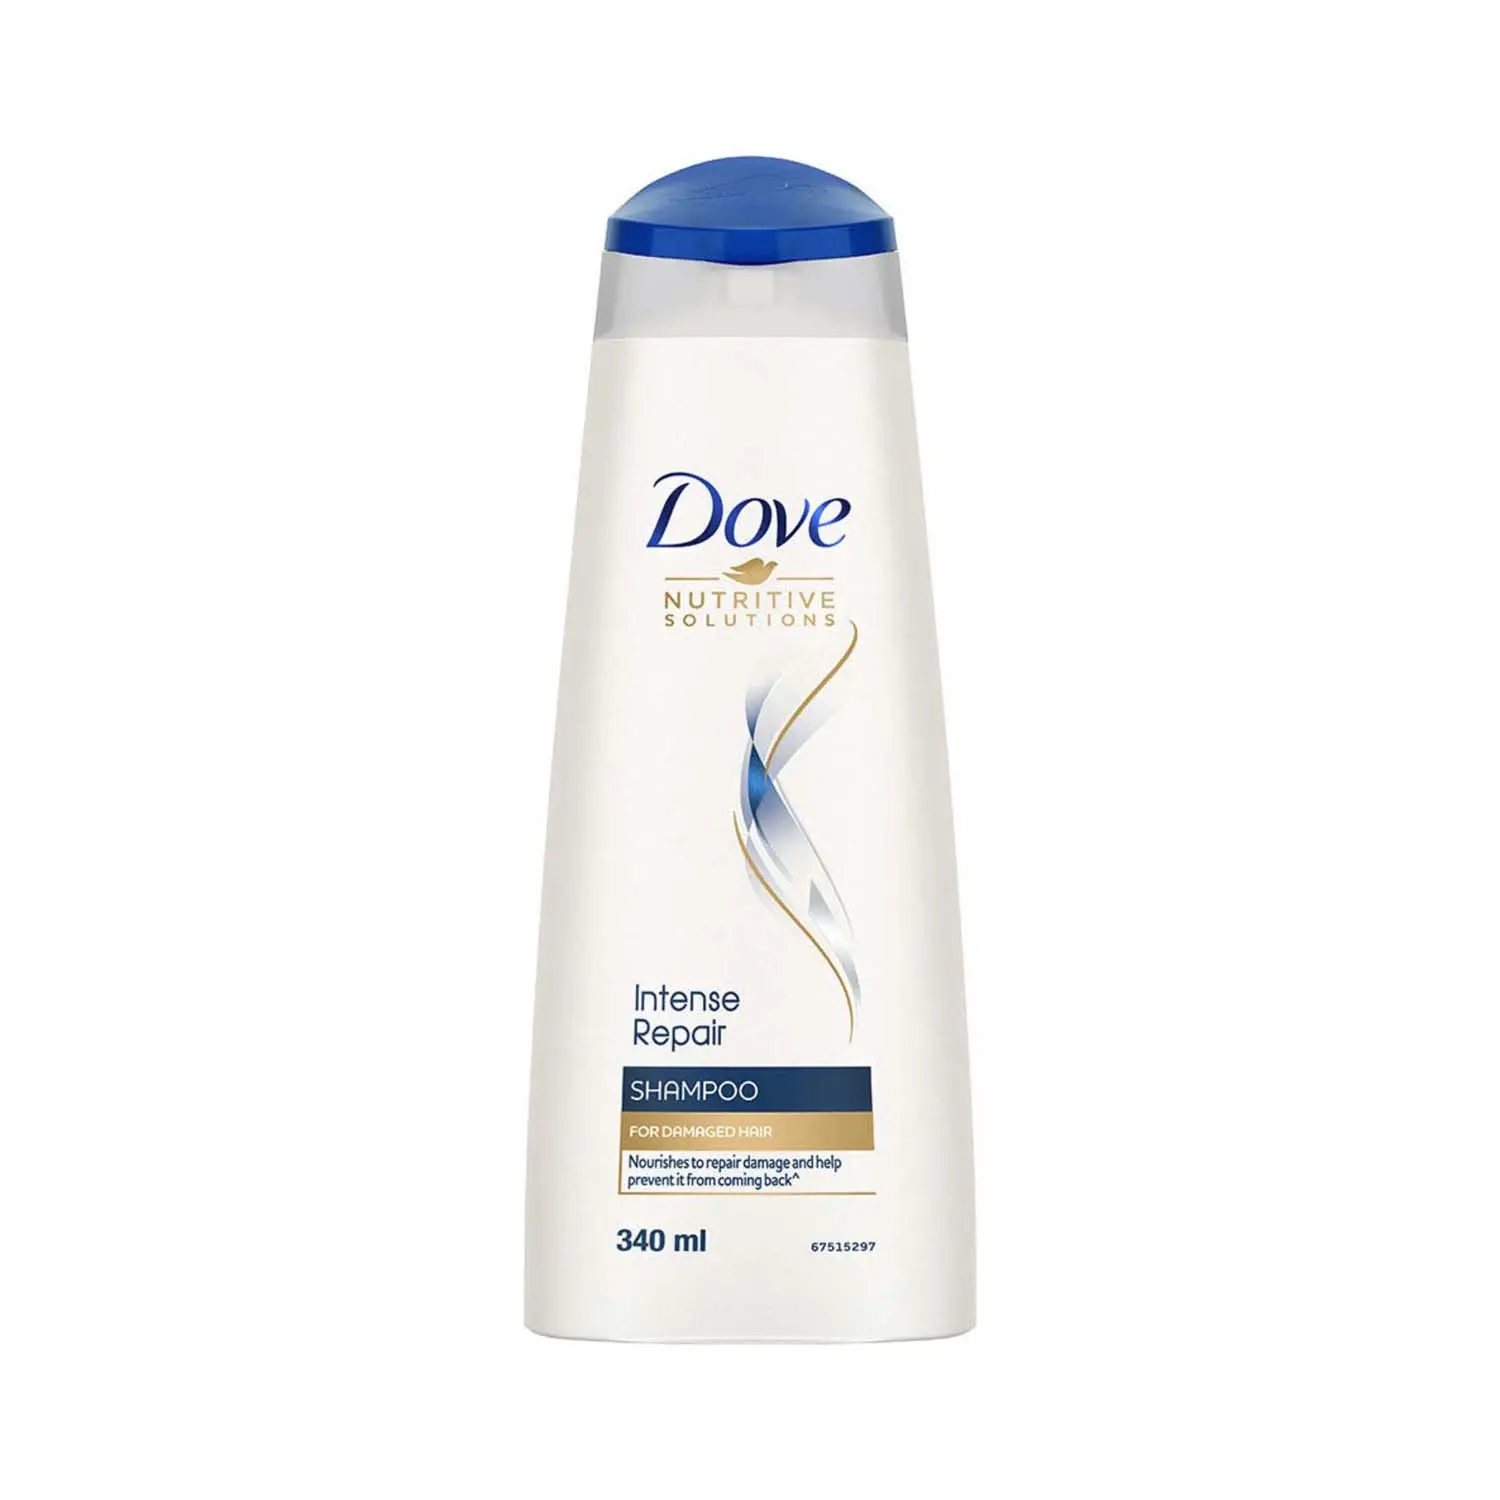 Dove Intense Repair Hair Shampoo (340ml)